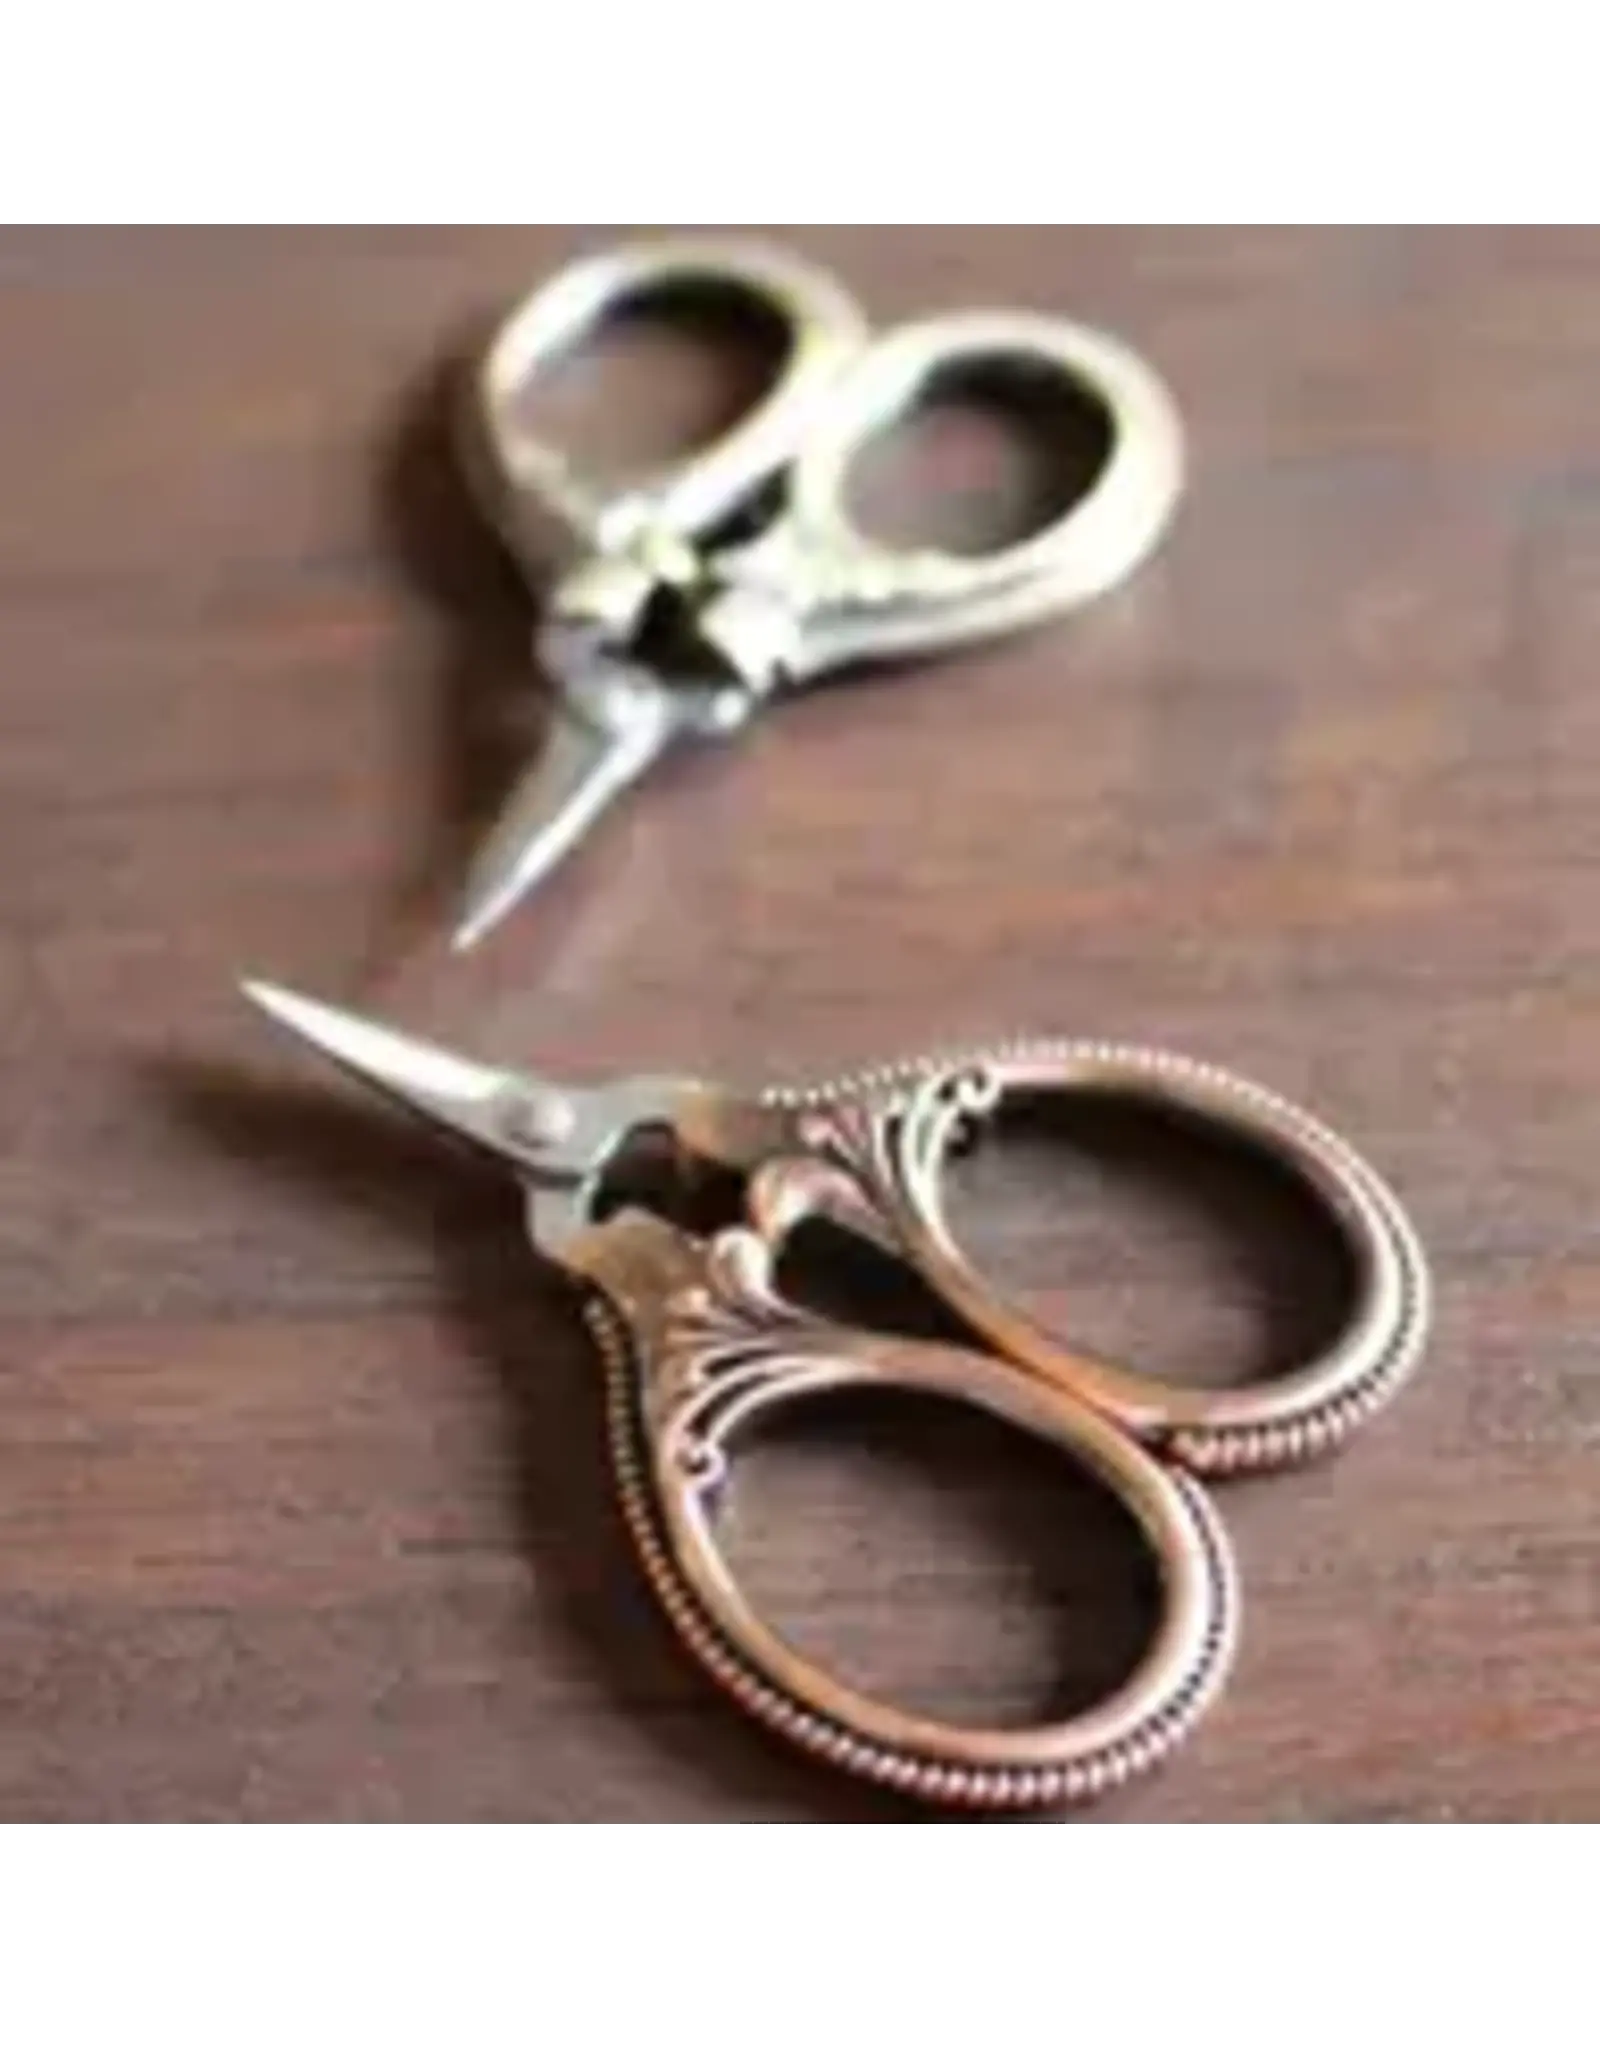 NNK Press Mini Embroidery Scissors - Antique Copper - NNK Press